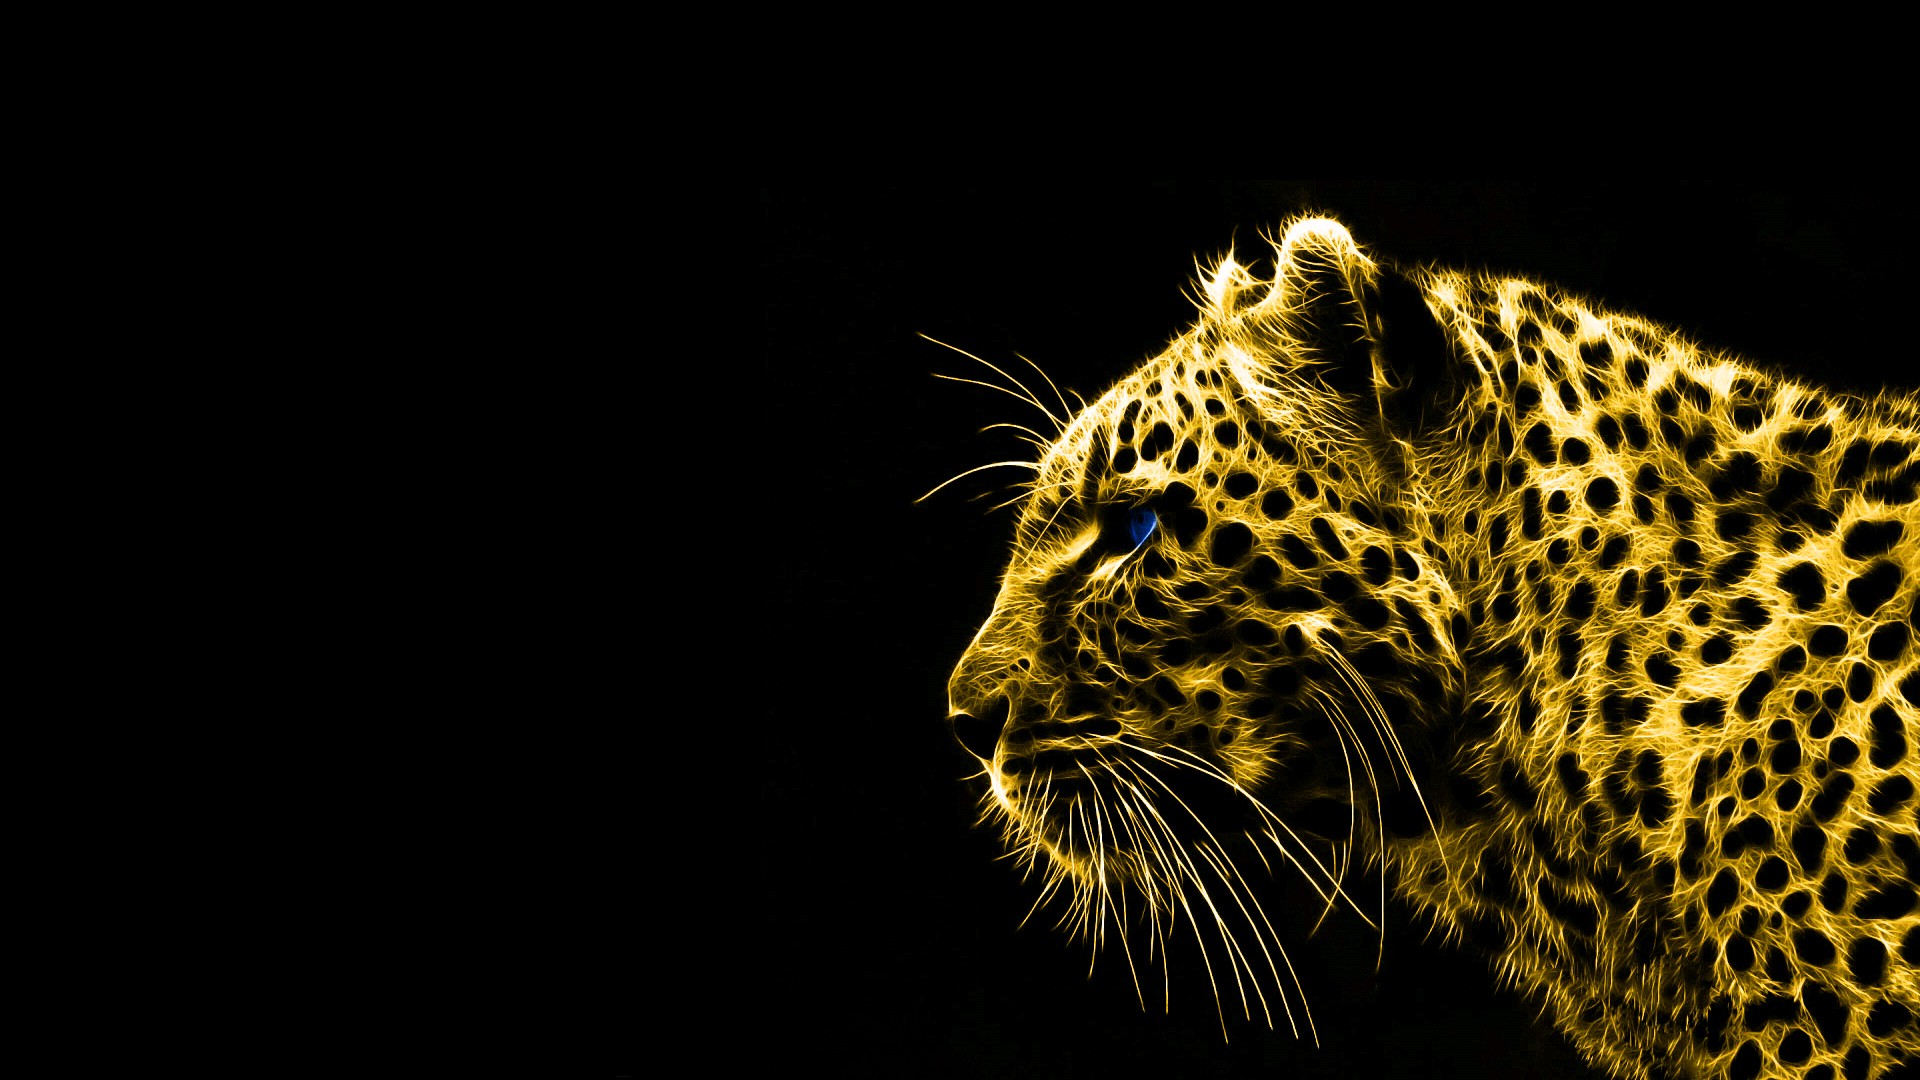 Animals Gold Spirit Leopards Black Background Hd Wallpaper - Black And Gold Animals , HD Wallpaper & Backgrounds